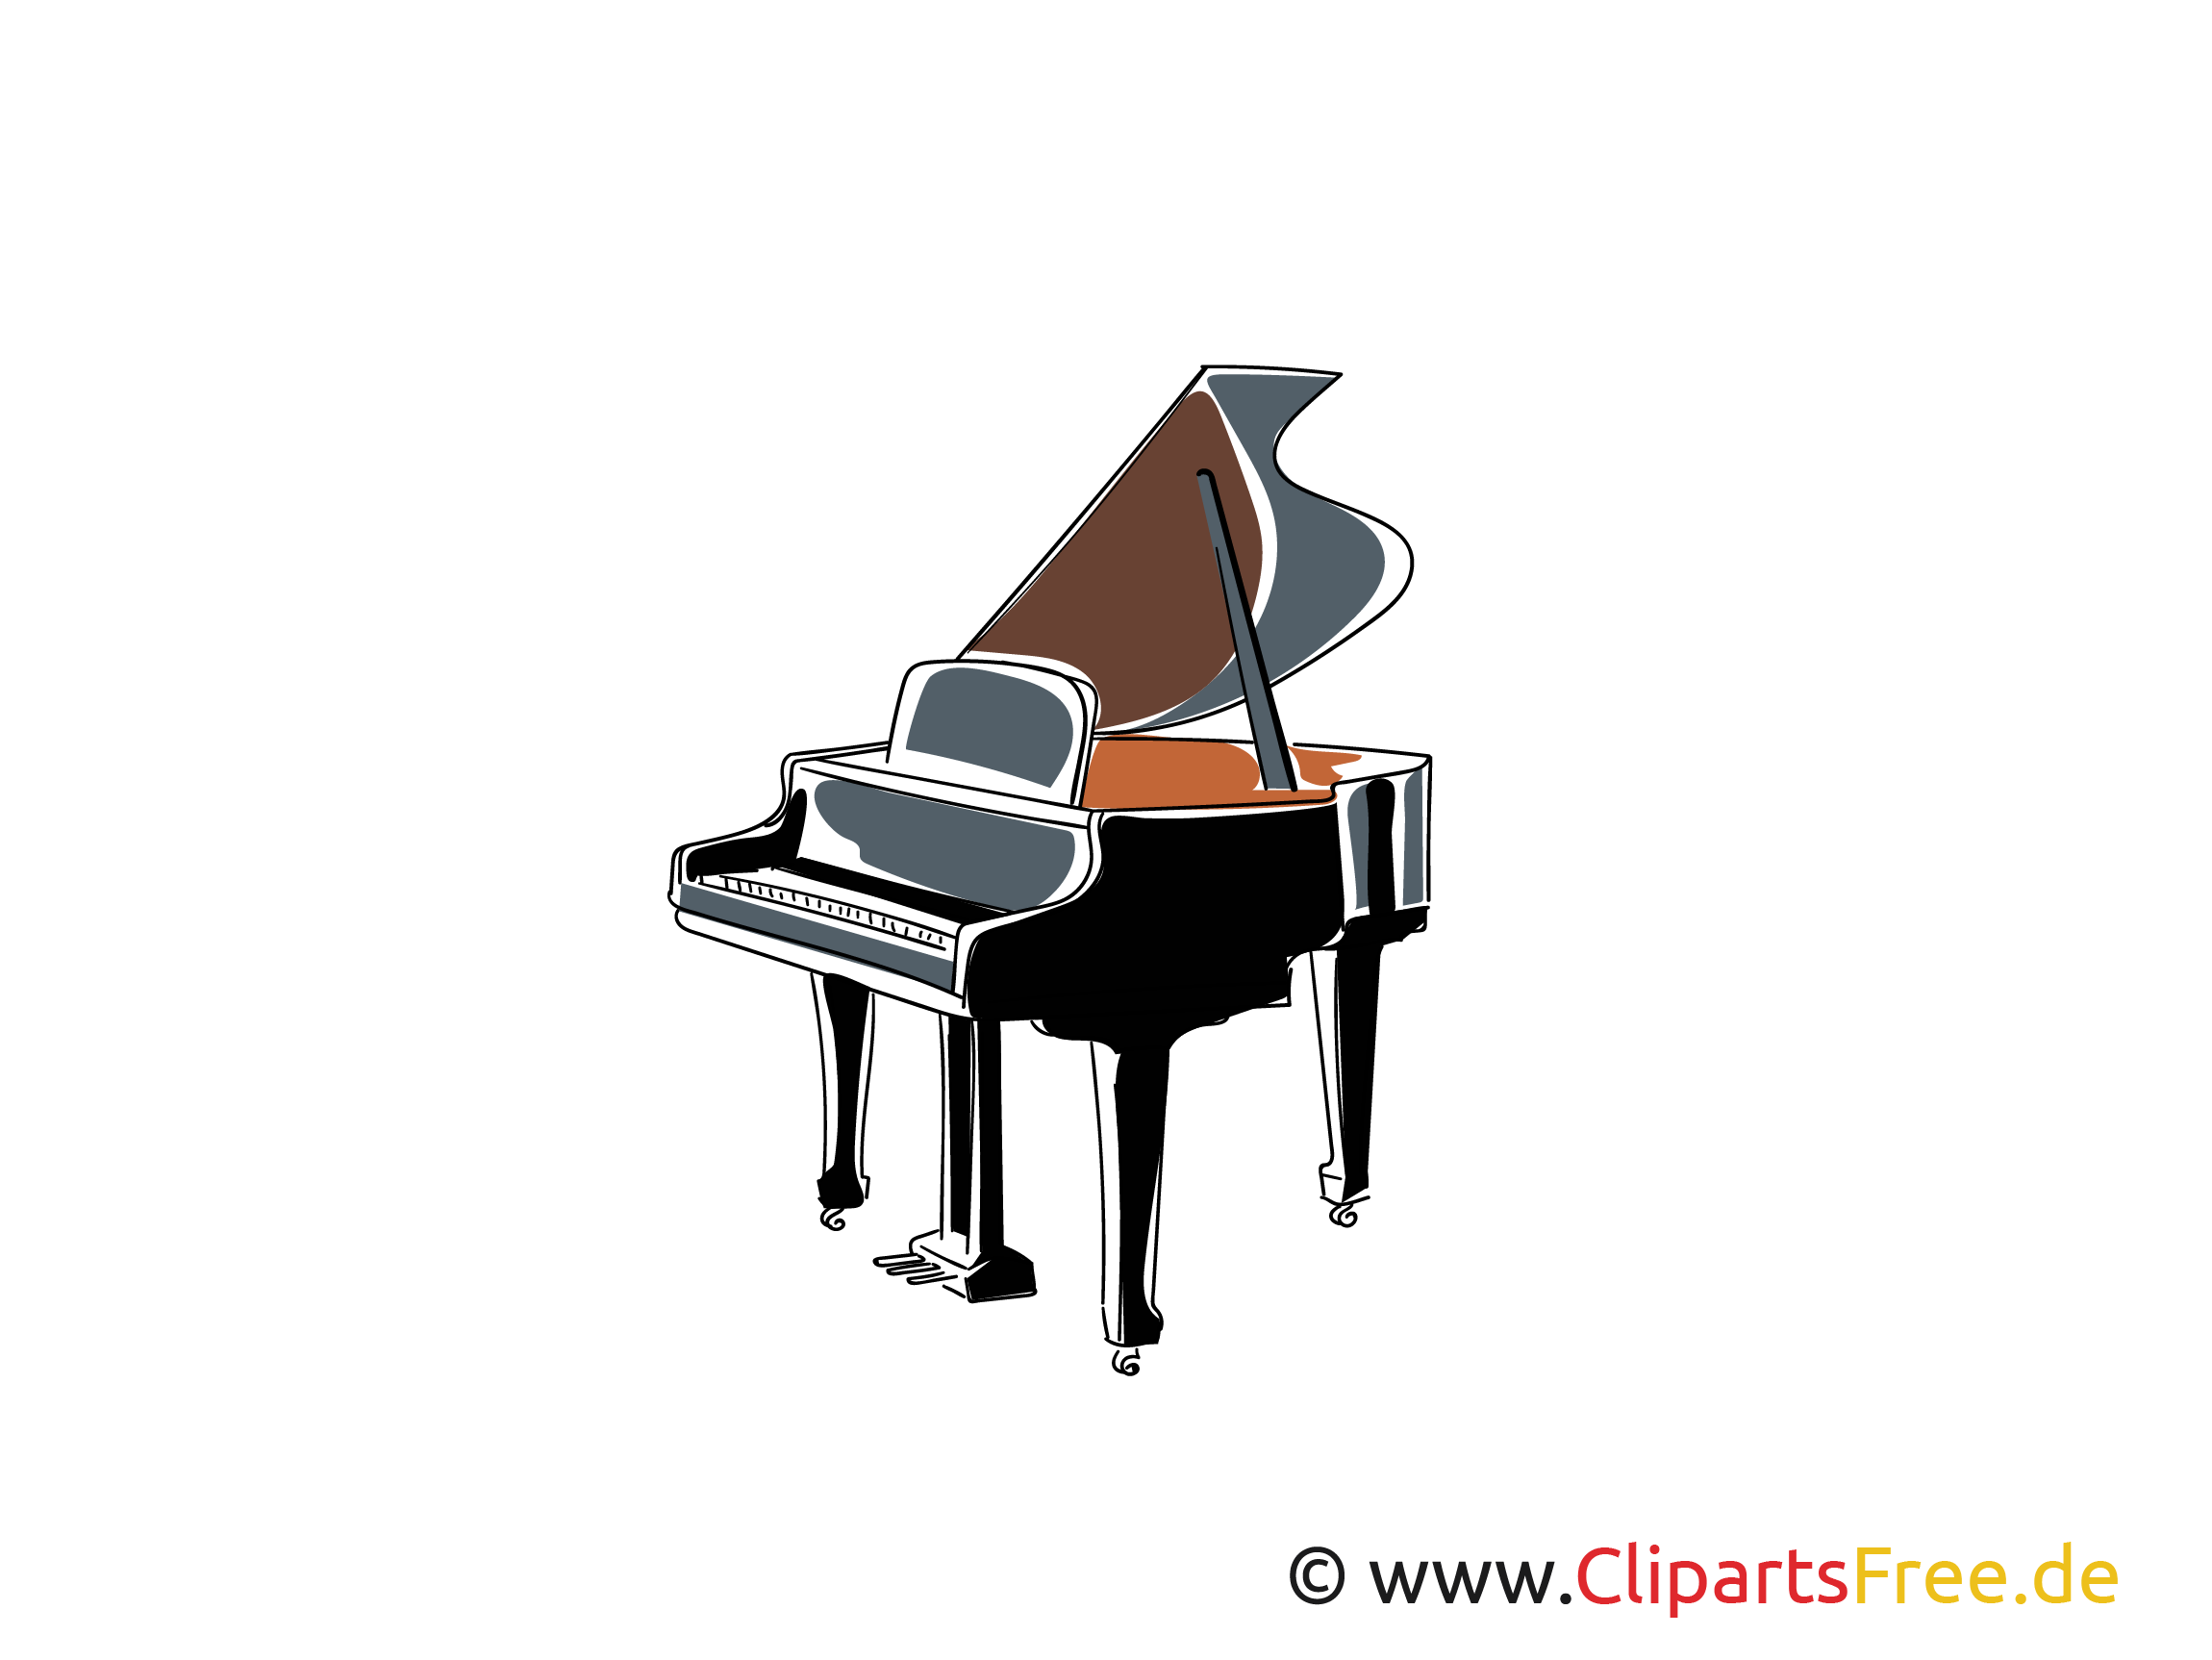 ピアノ 翼のイメージ クリップアート ダウンロード無料の画像